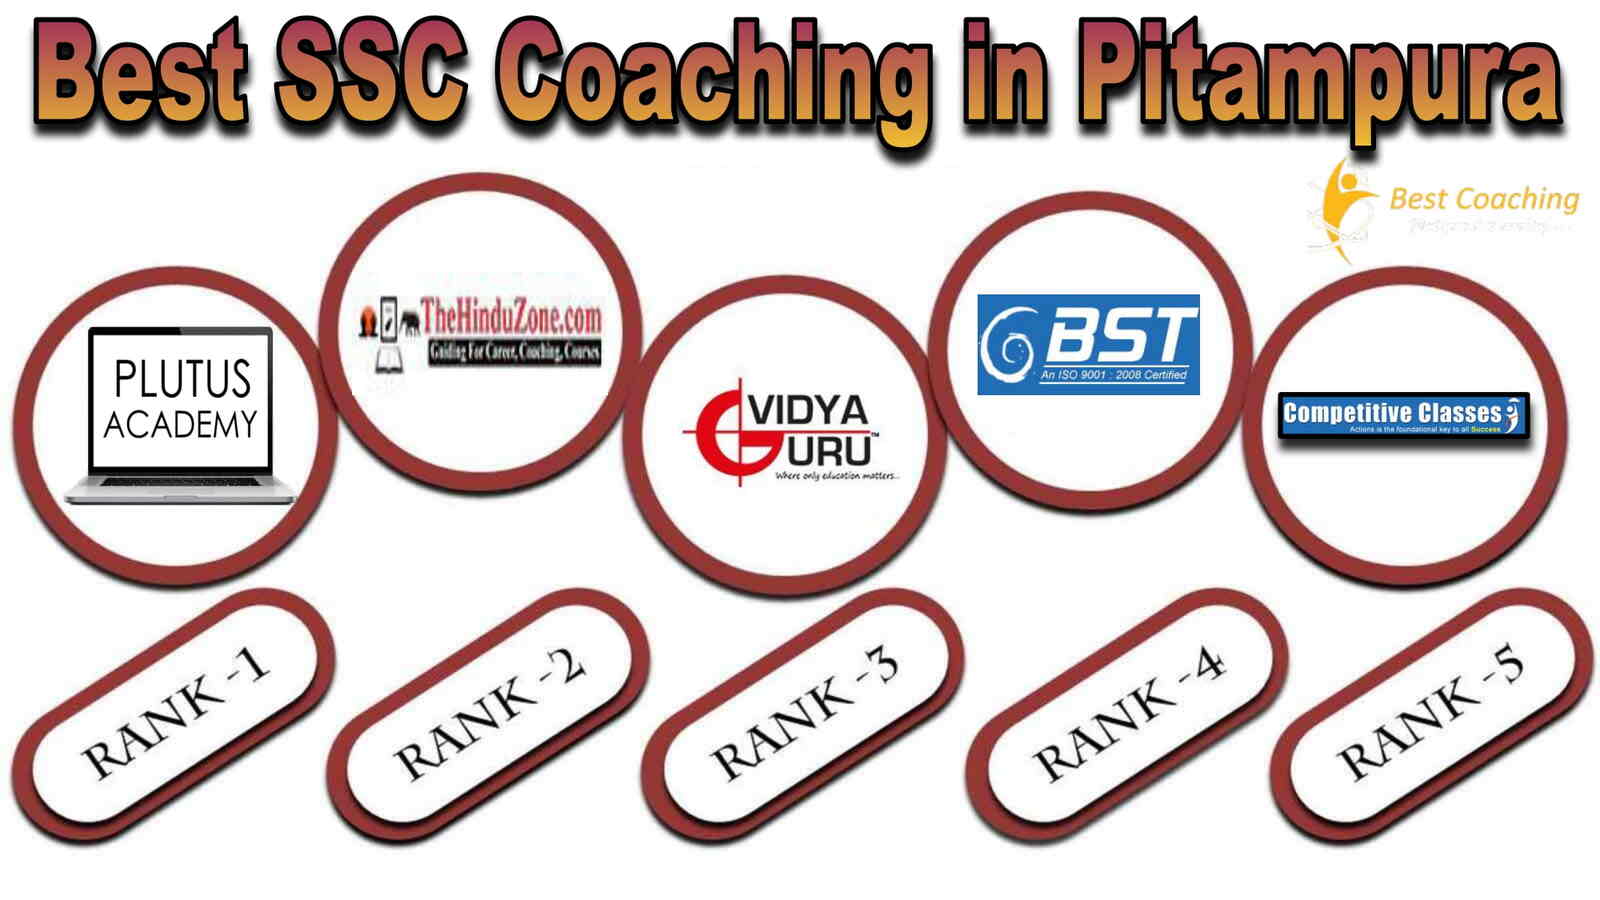 Best SSC Coaching in Pitampura